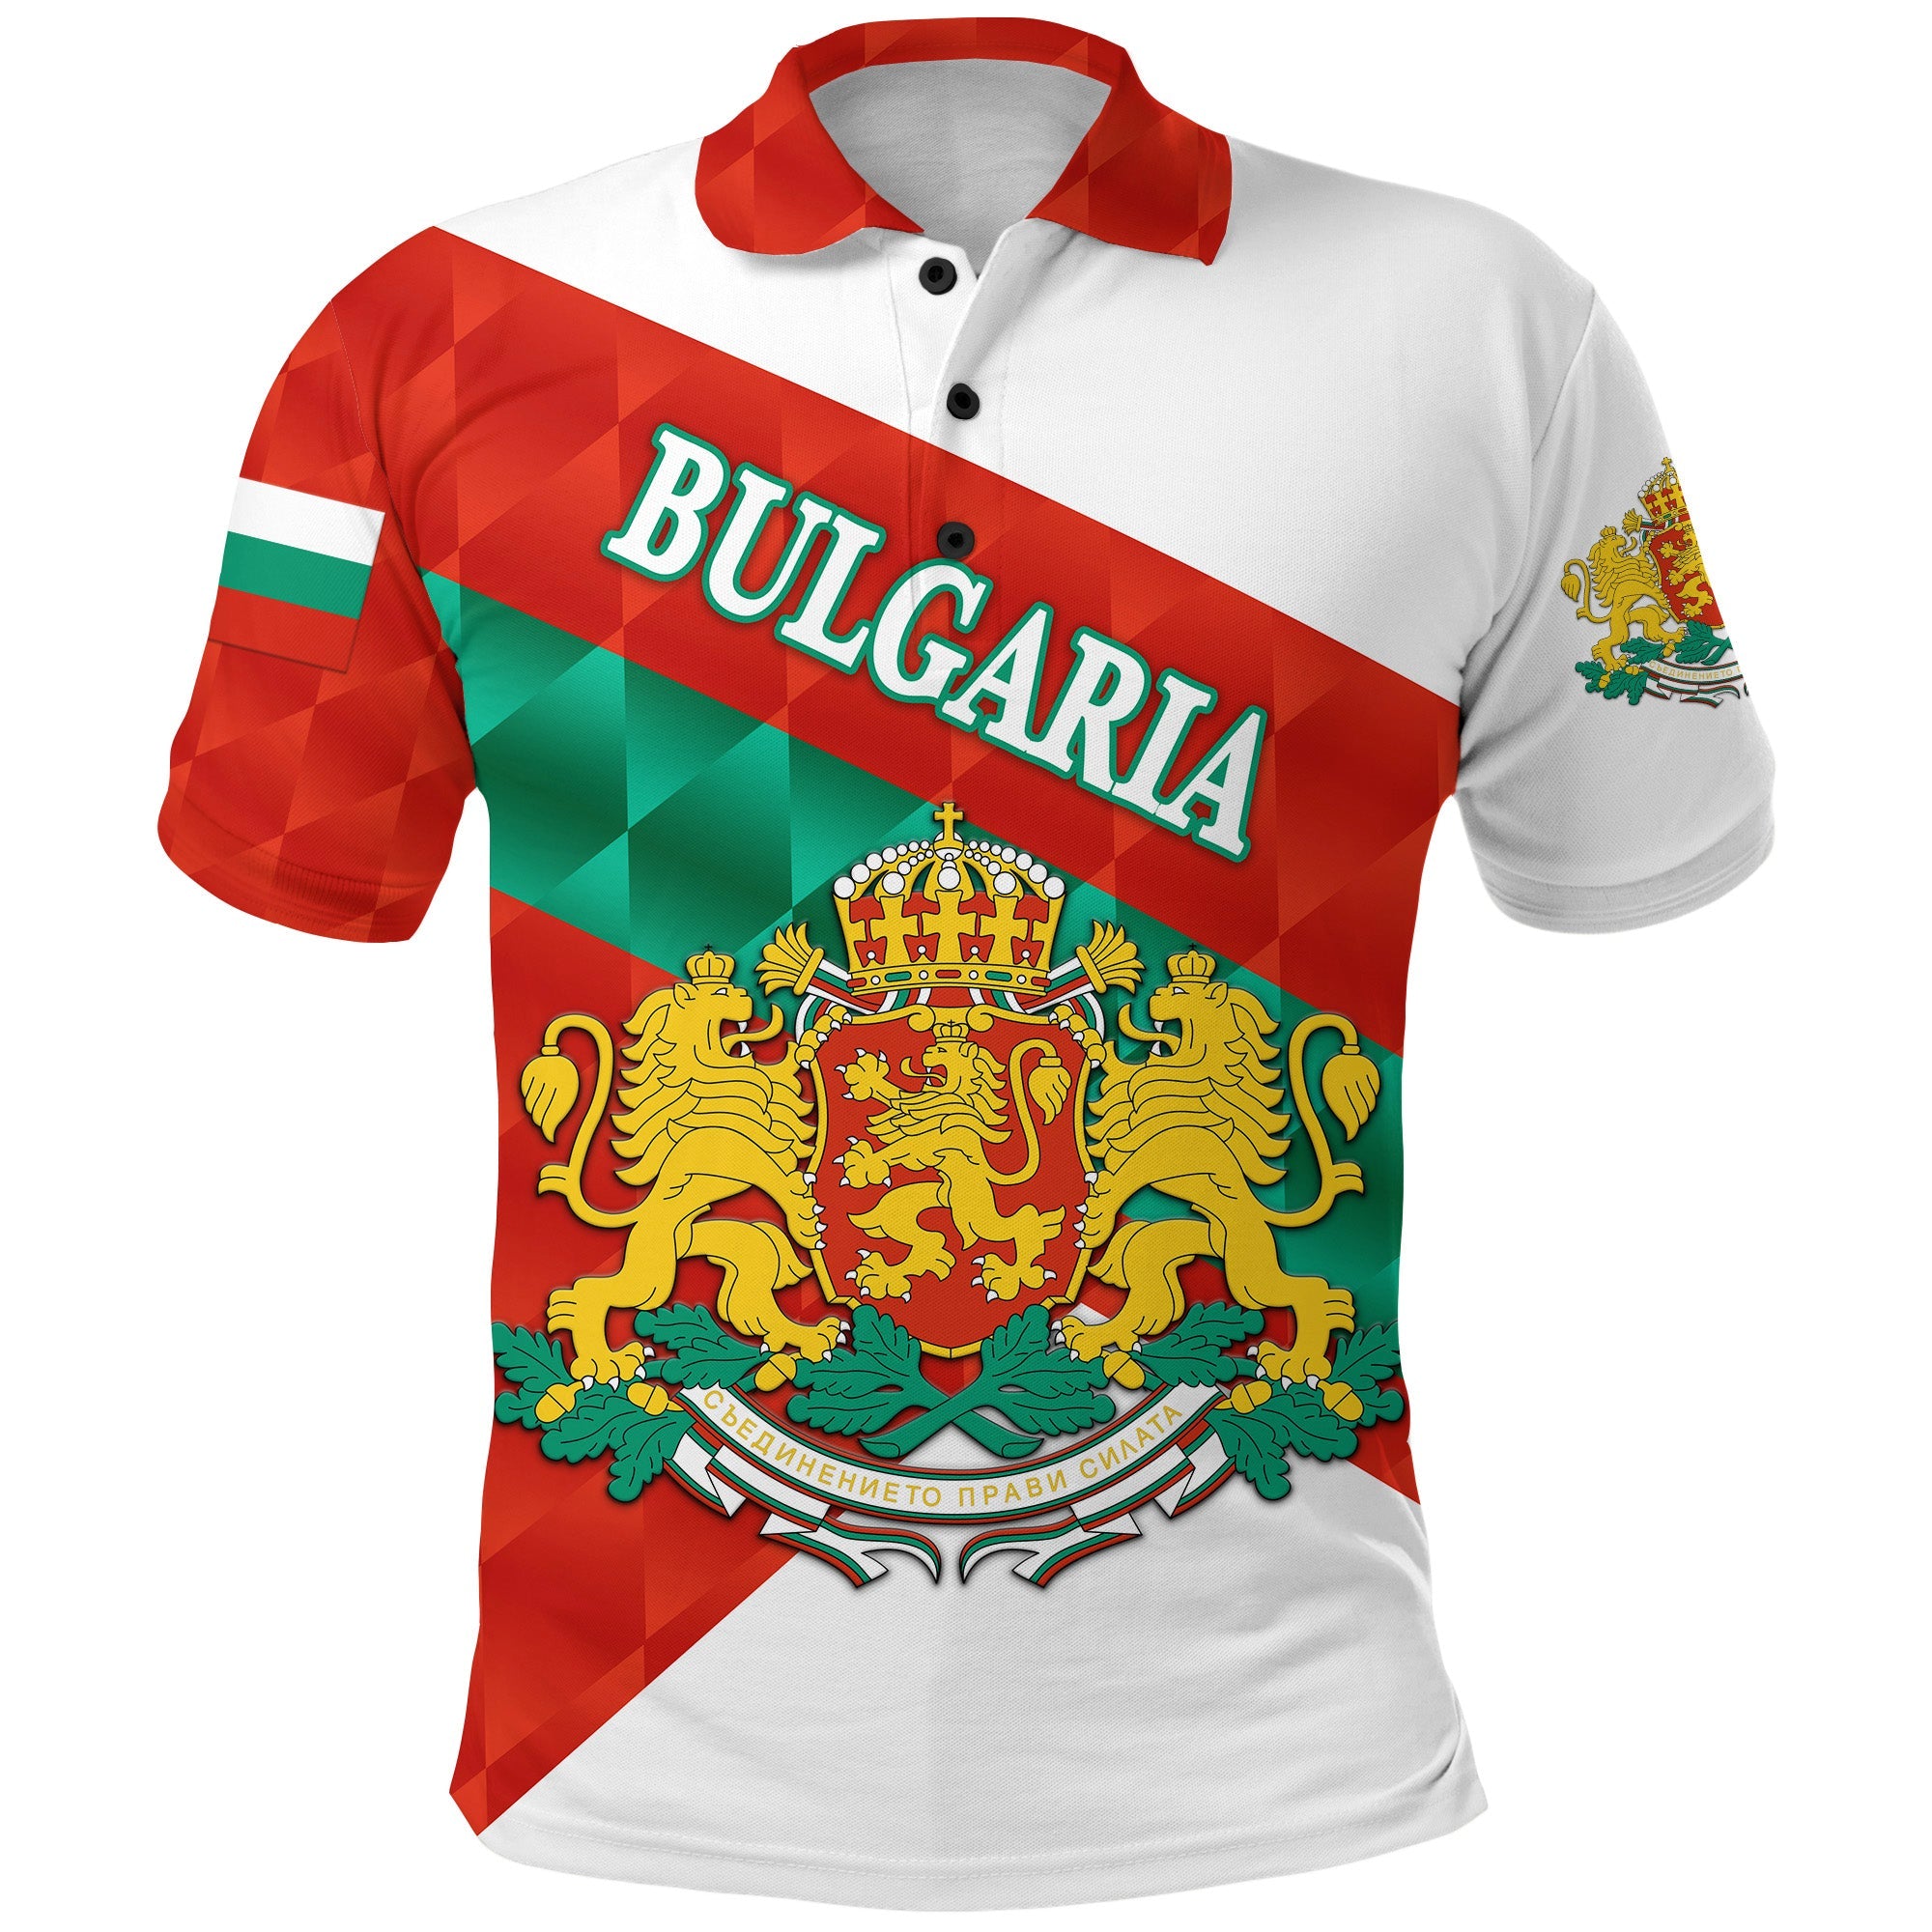 bulgaria-polo-shirt-sporty-style